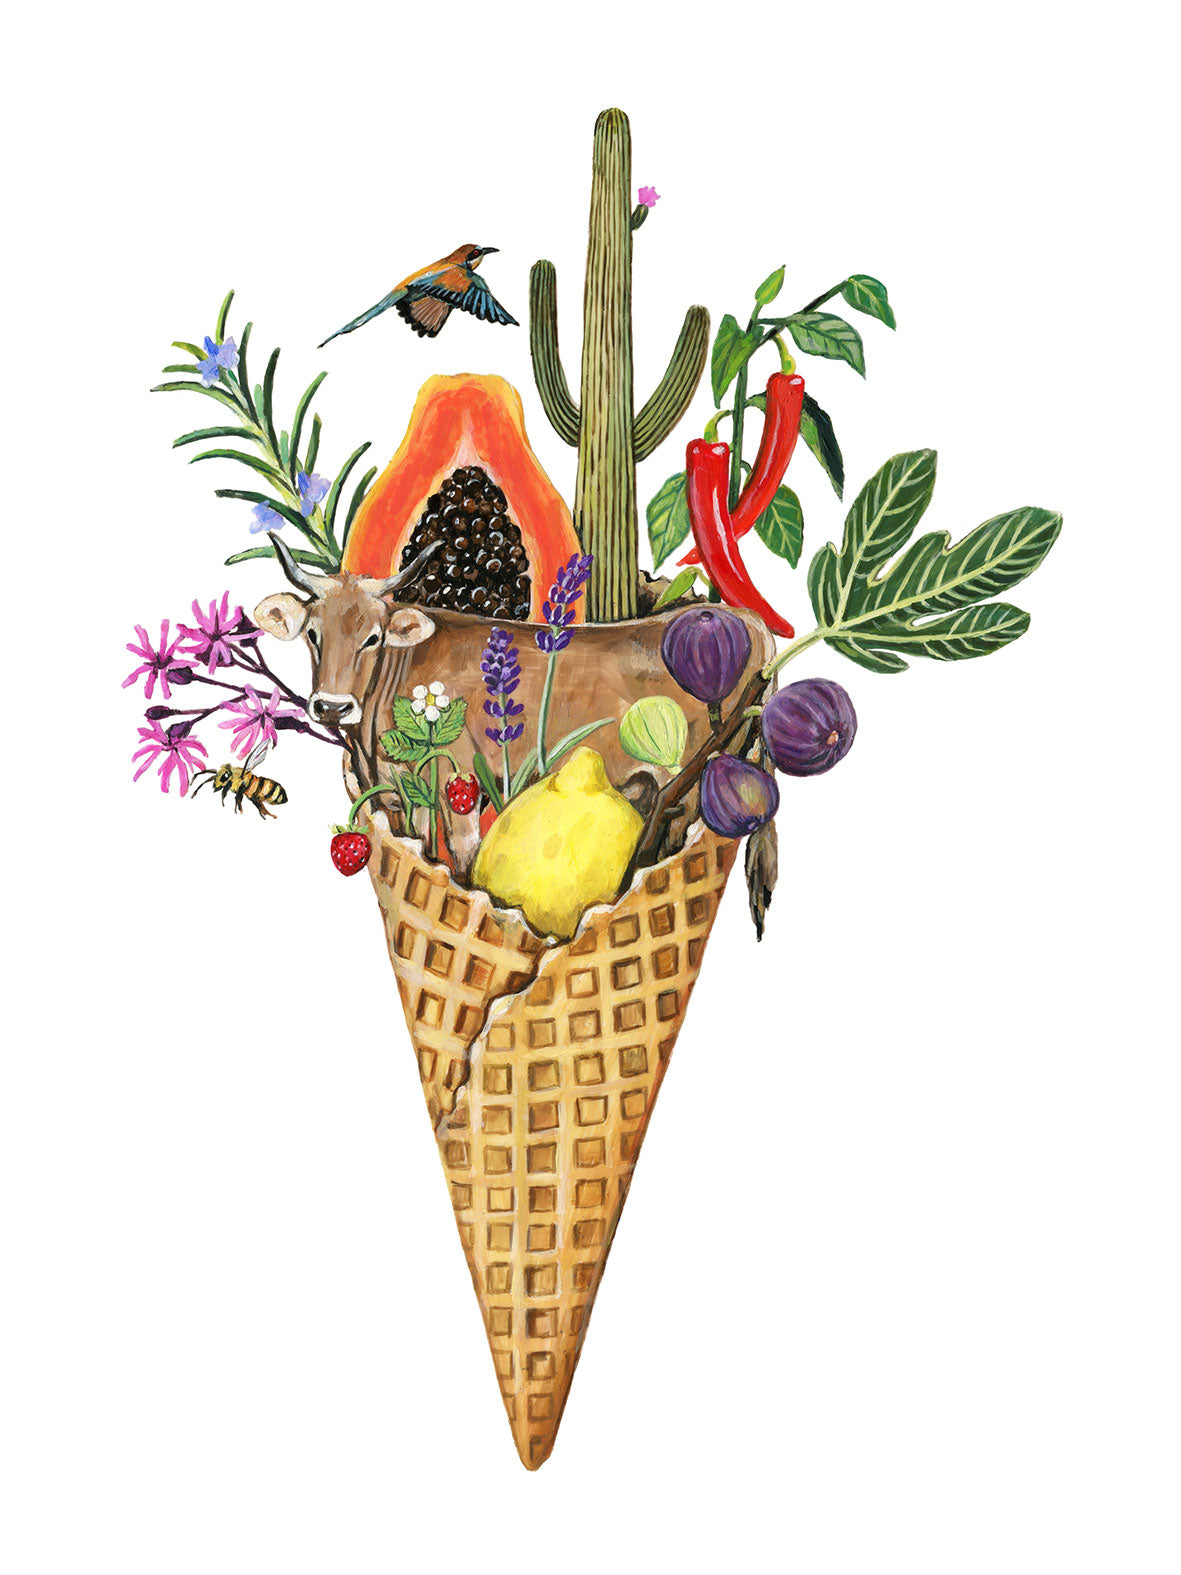 Das farbenfrohe Fine-Art Print zeigt eine Eiswaffel befüllt bunten Pflanzen, Blumen und vielerlei Früchten. Zwischen Kaktus und Lavendel ist eine Kuh erkennbar, über der ein orange-blauer Papagei seine Flügel schlägt.